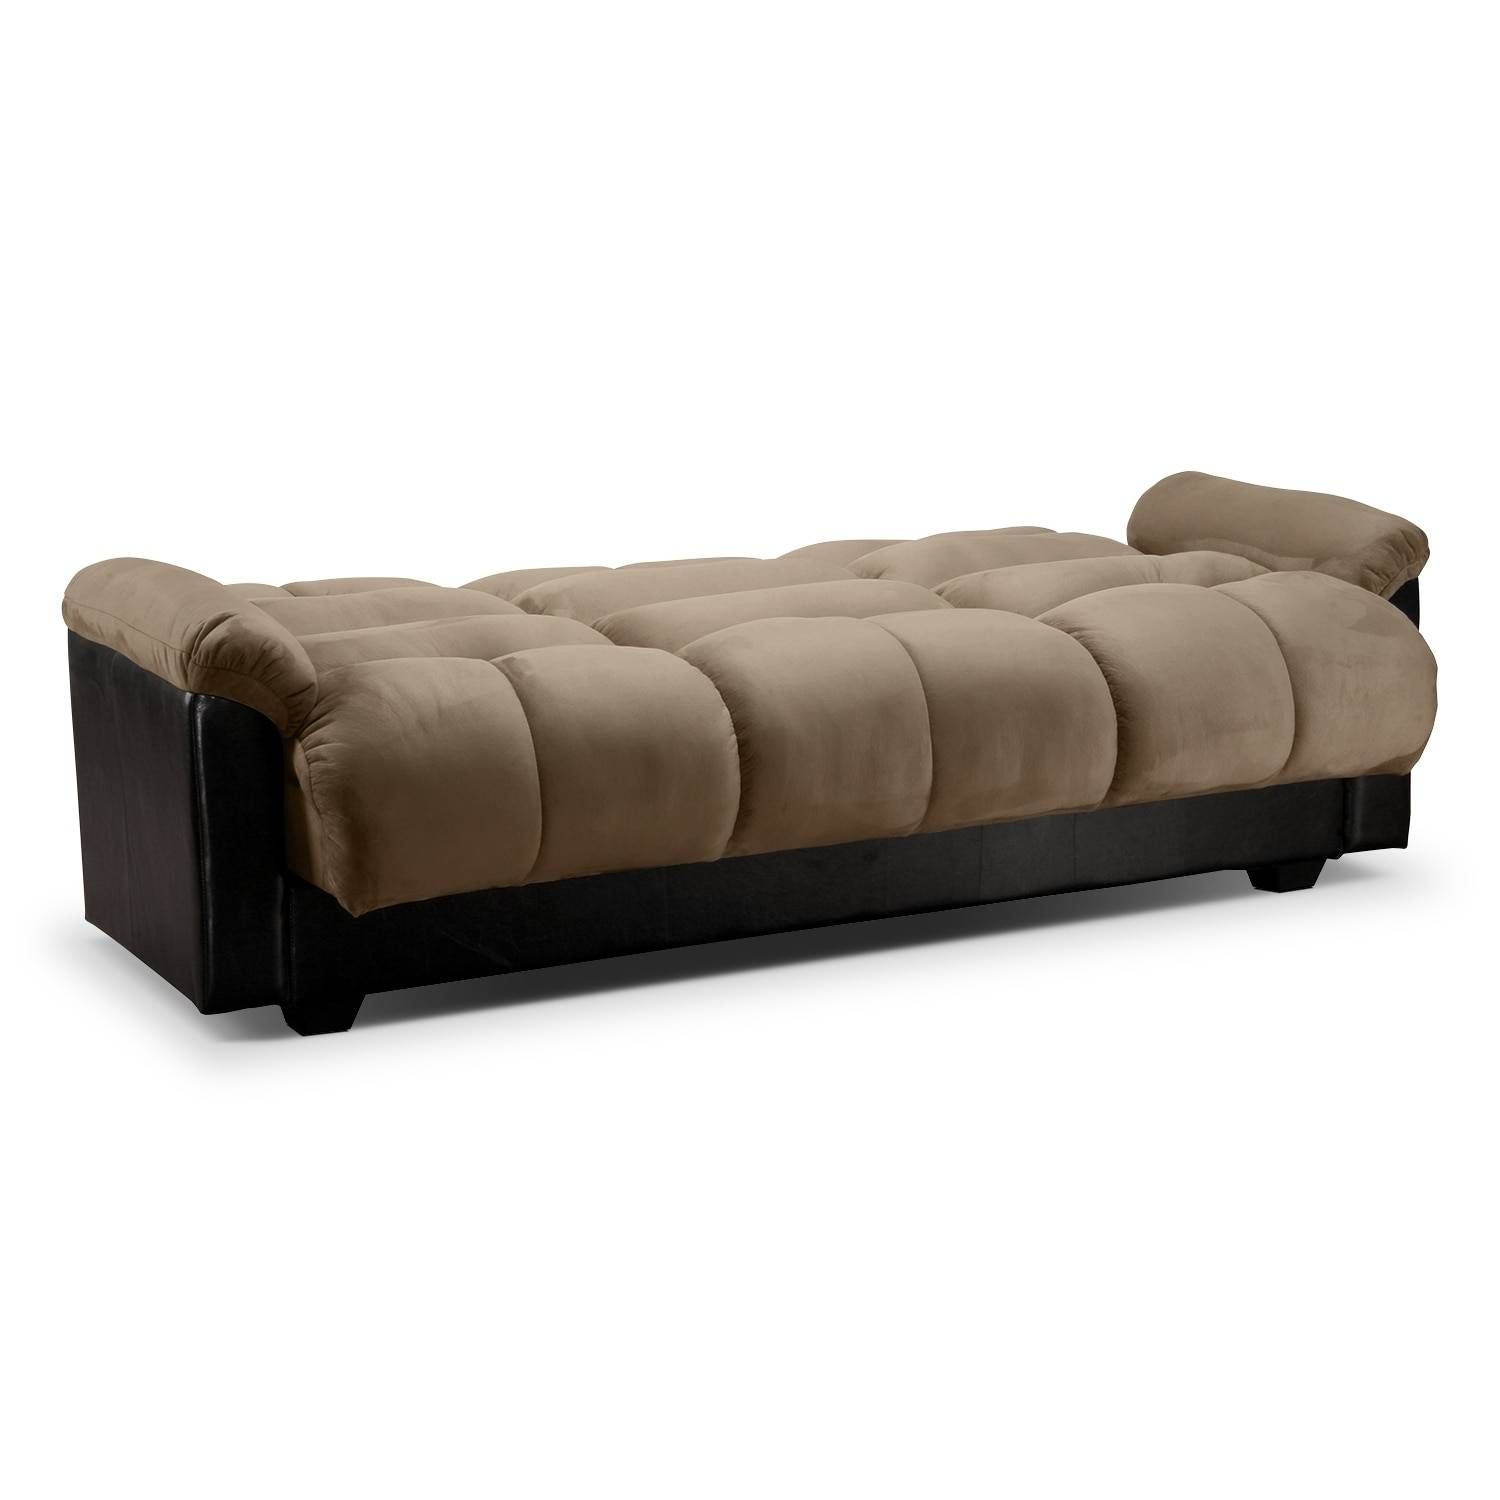 Ara Futon Sofa Bed With Storage – Hazelnut | American Signature With Sofa Beds With Storages (View 19 of 30)